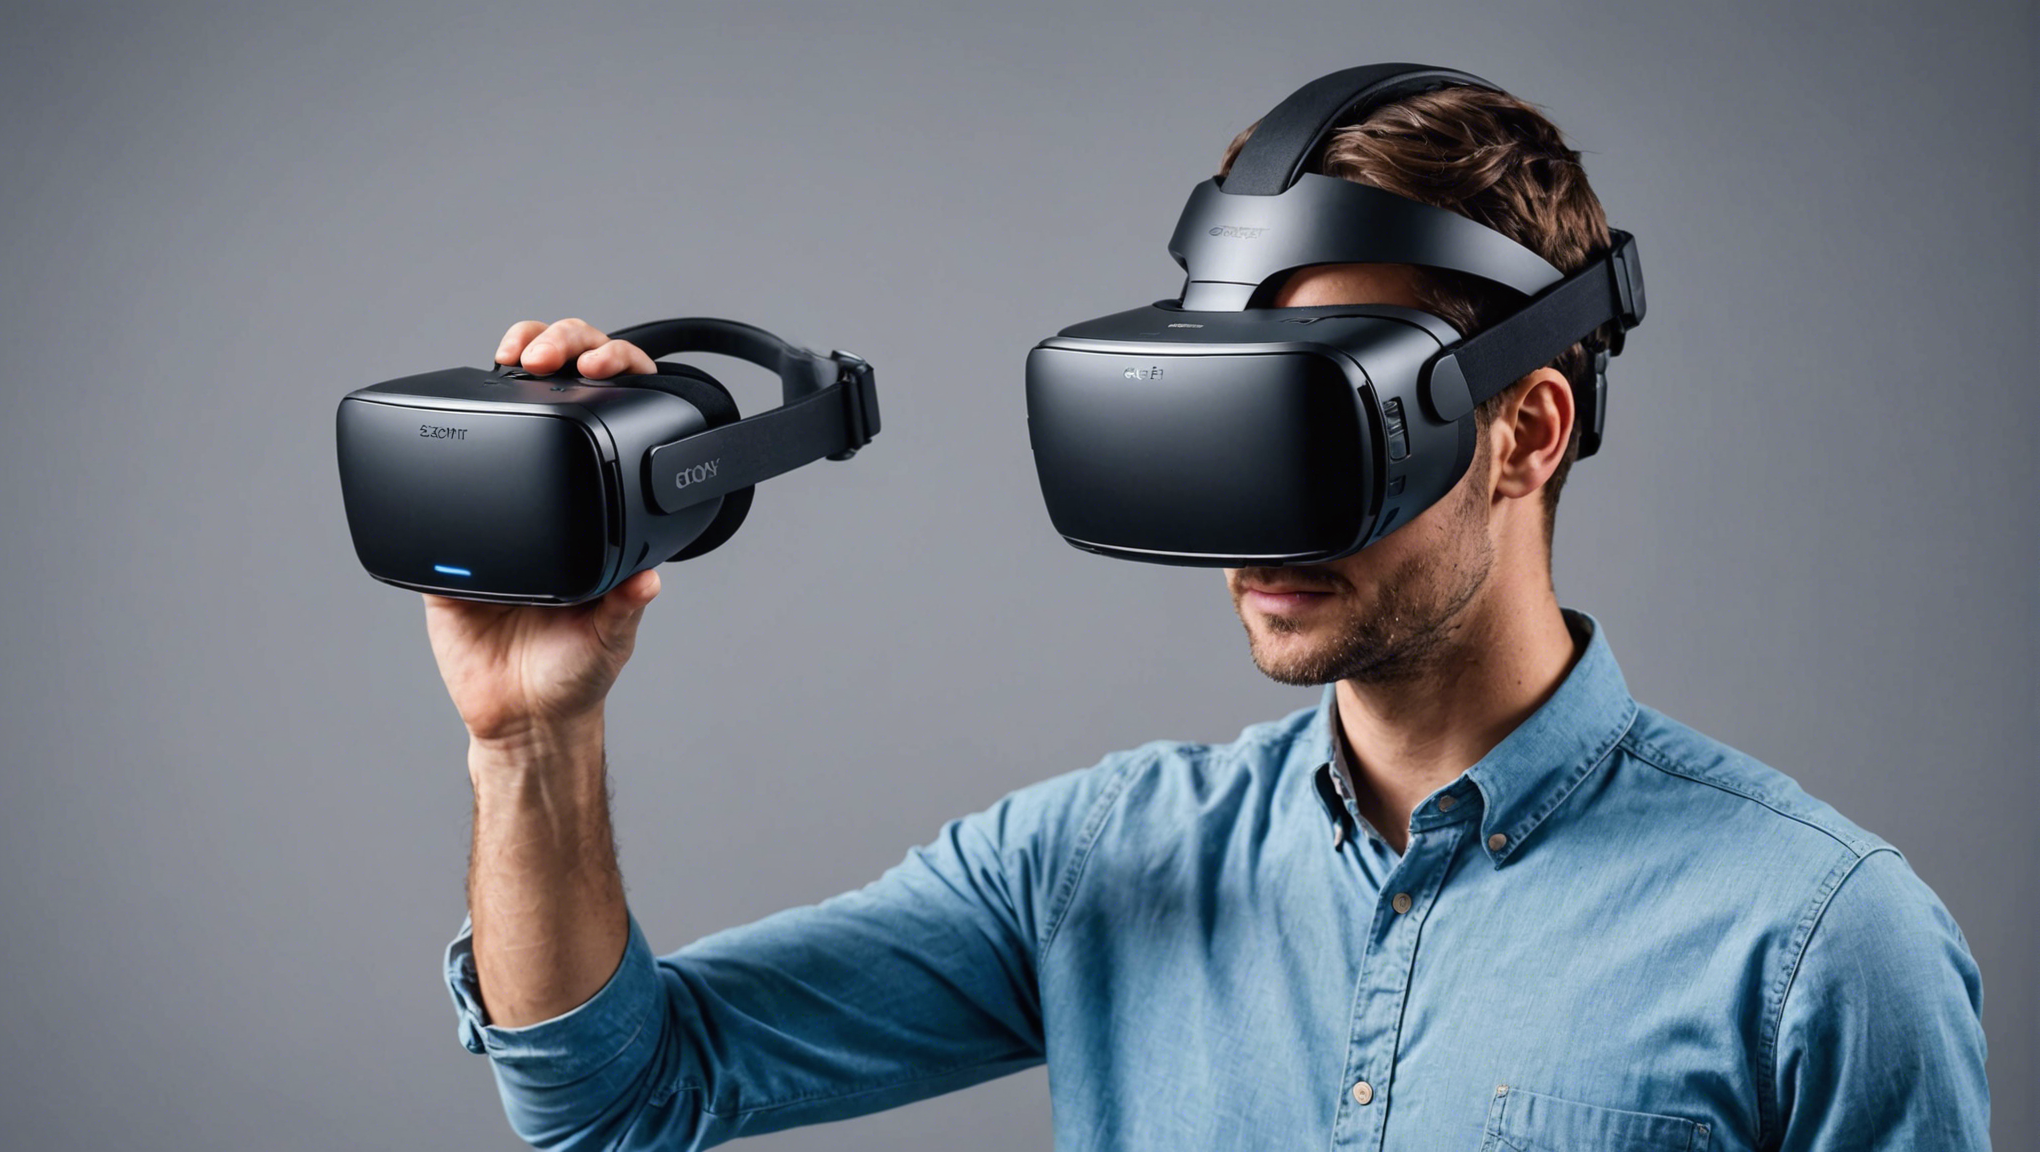 découvrez une explication claire de la réalité virtuelle et sa définition pour mieux comprendre ce concept innovant.